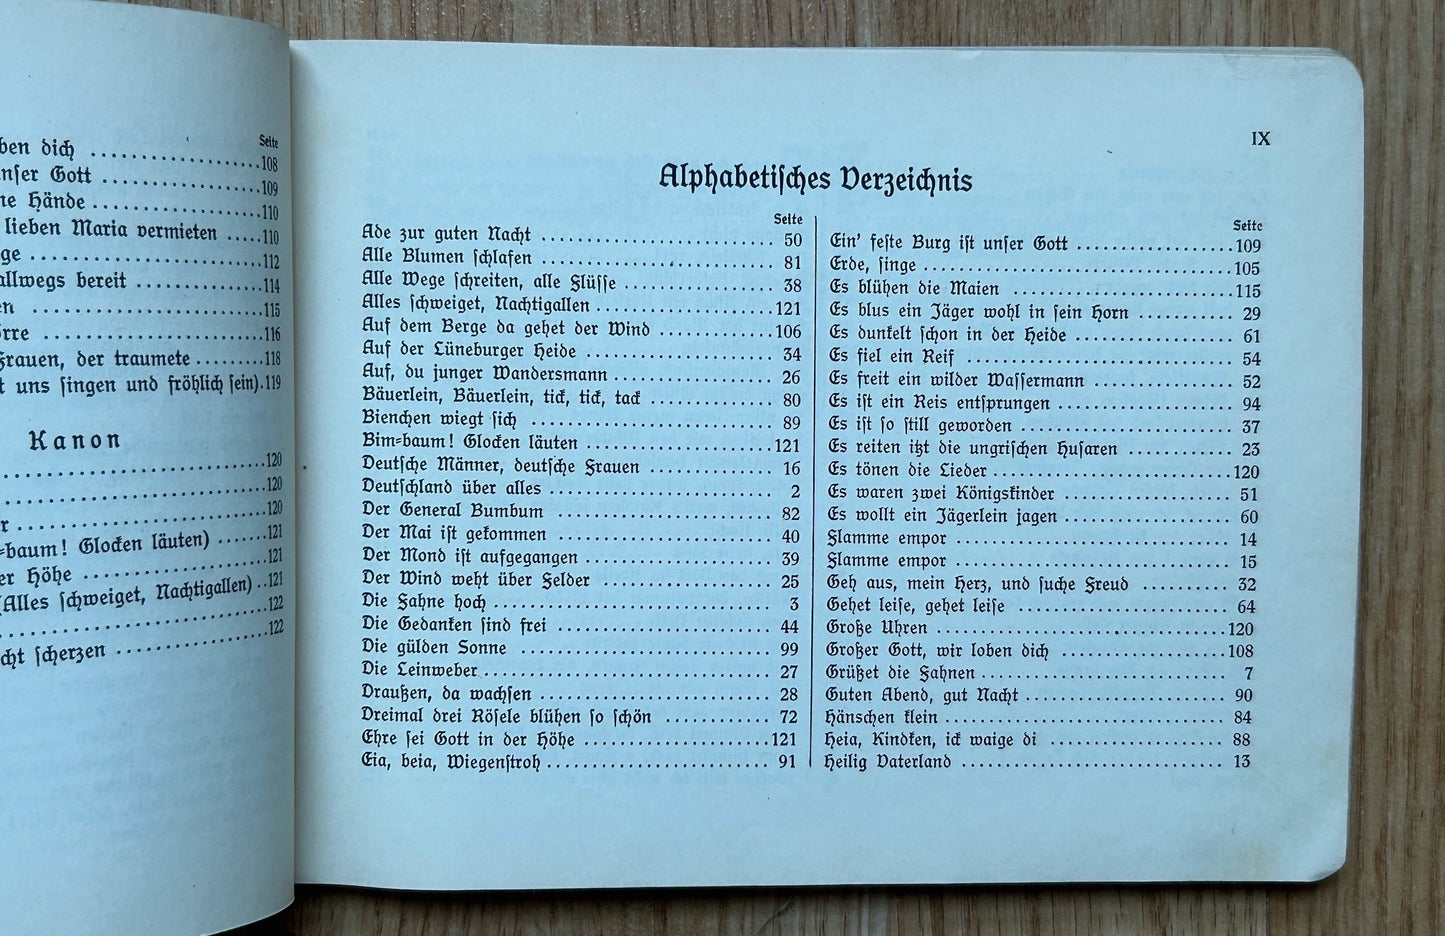 Liederbuch der NS Frauenschaft - women’s association songbook